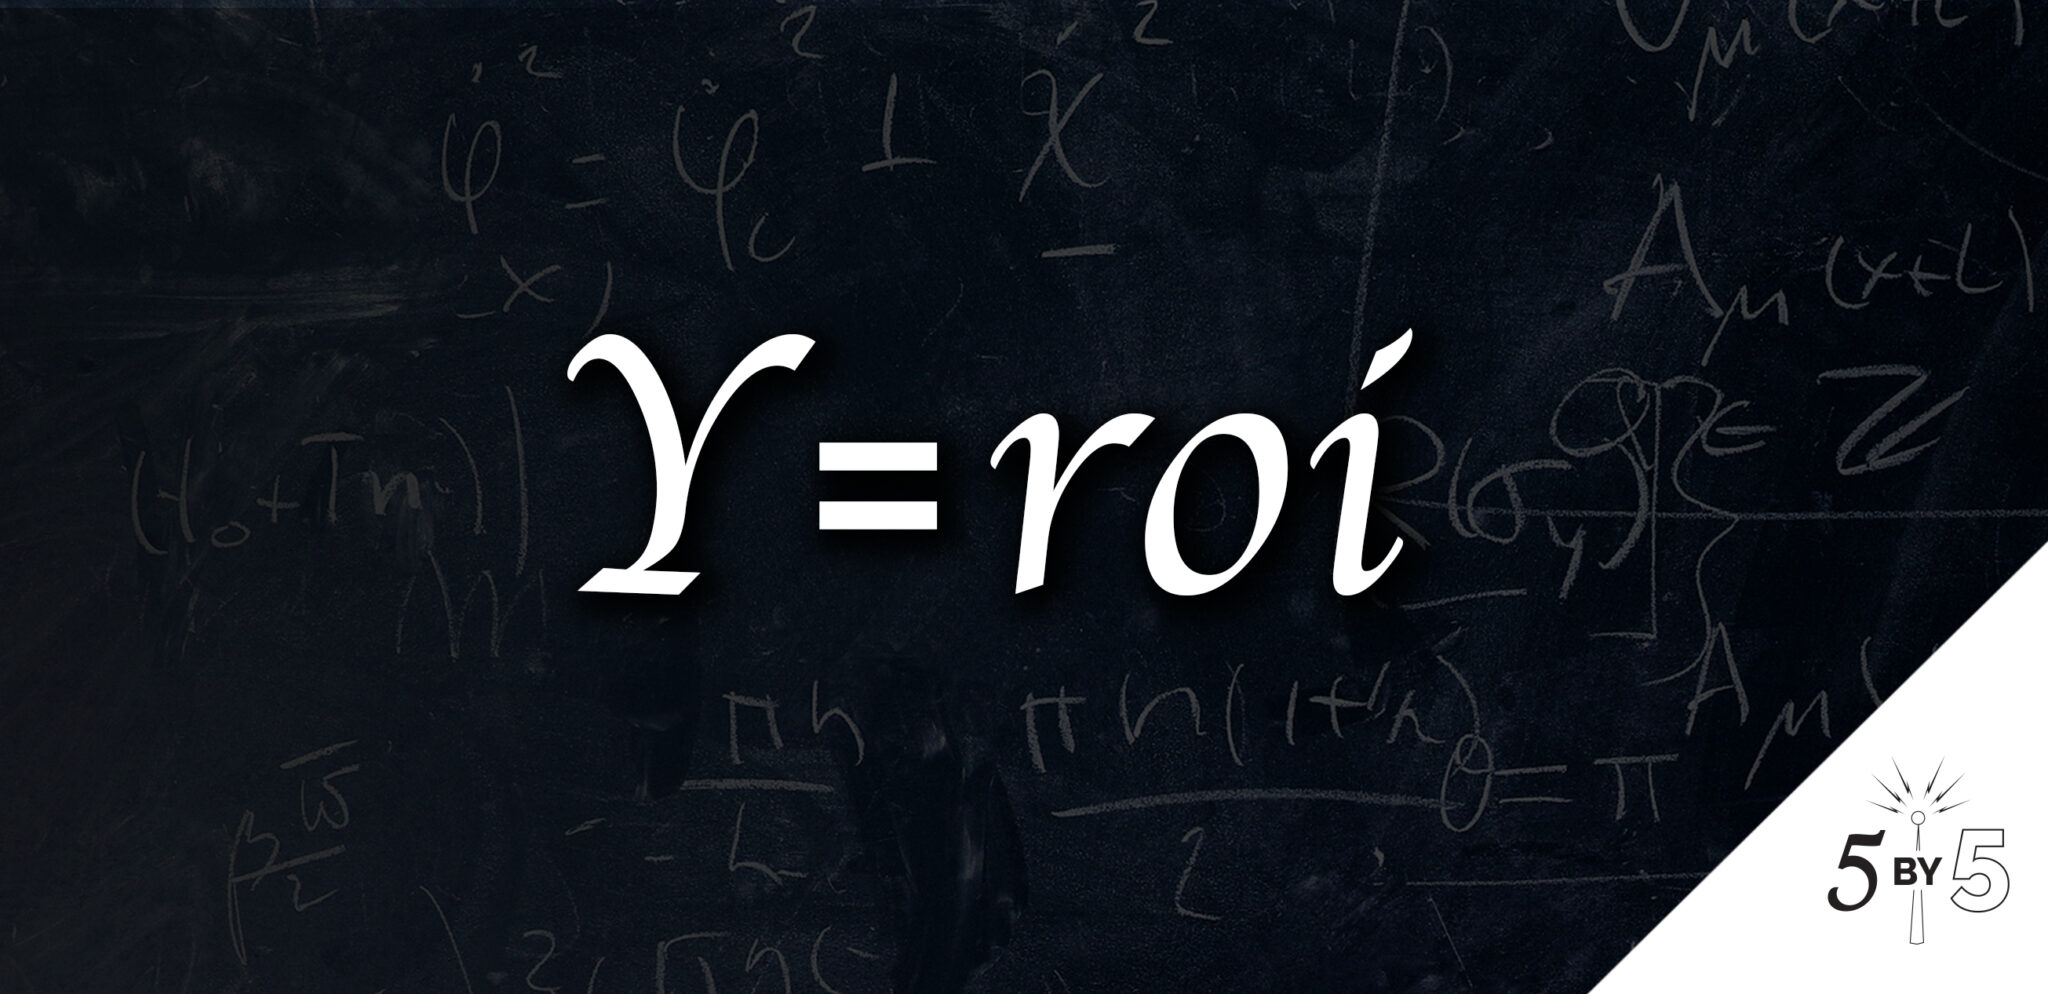 y=roi equation on chalkboard